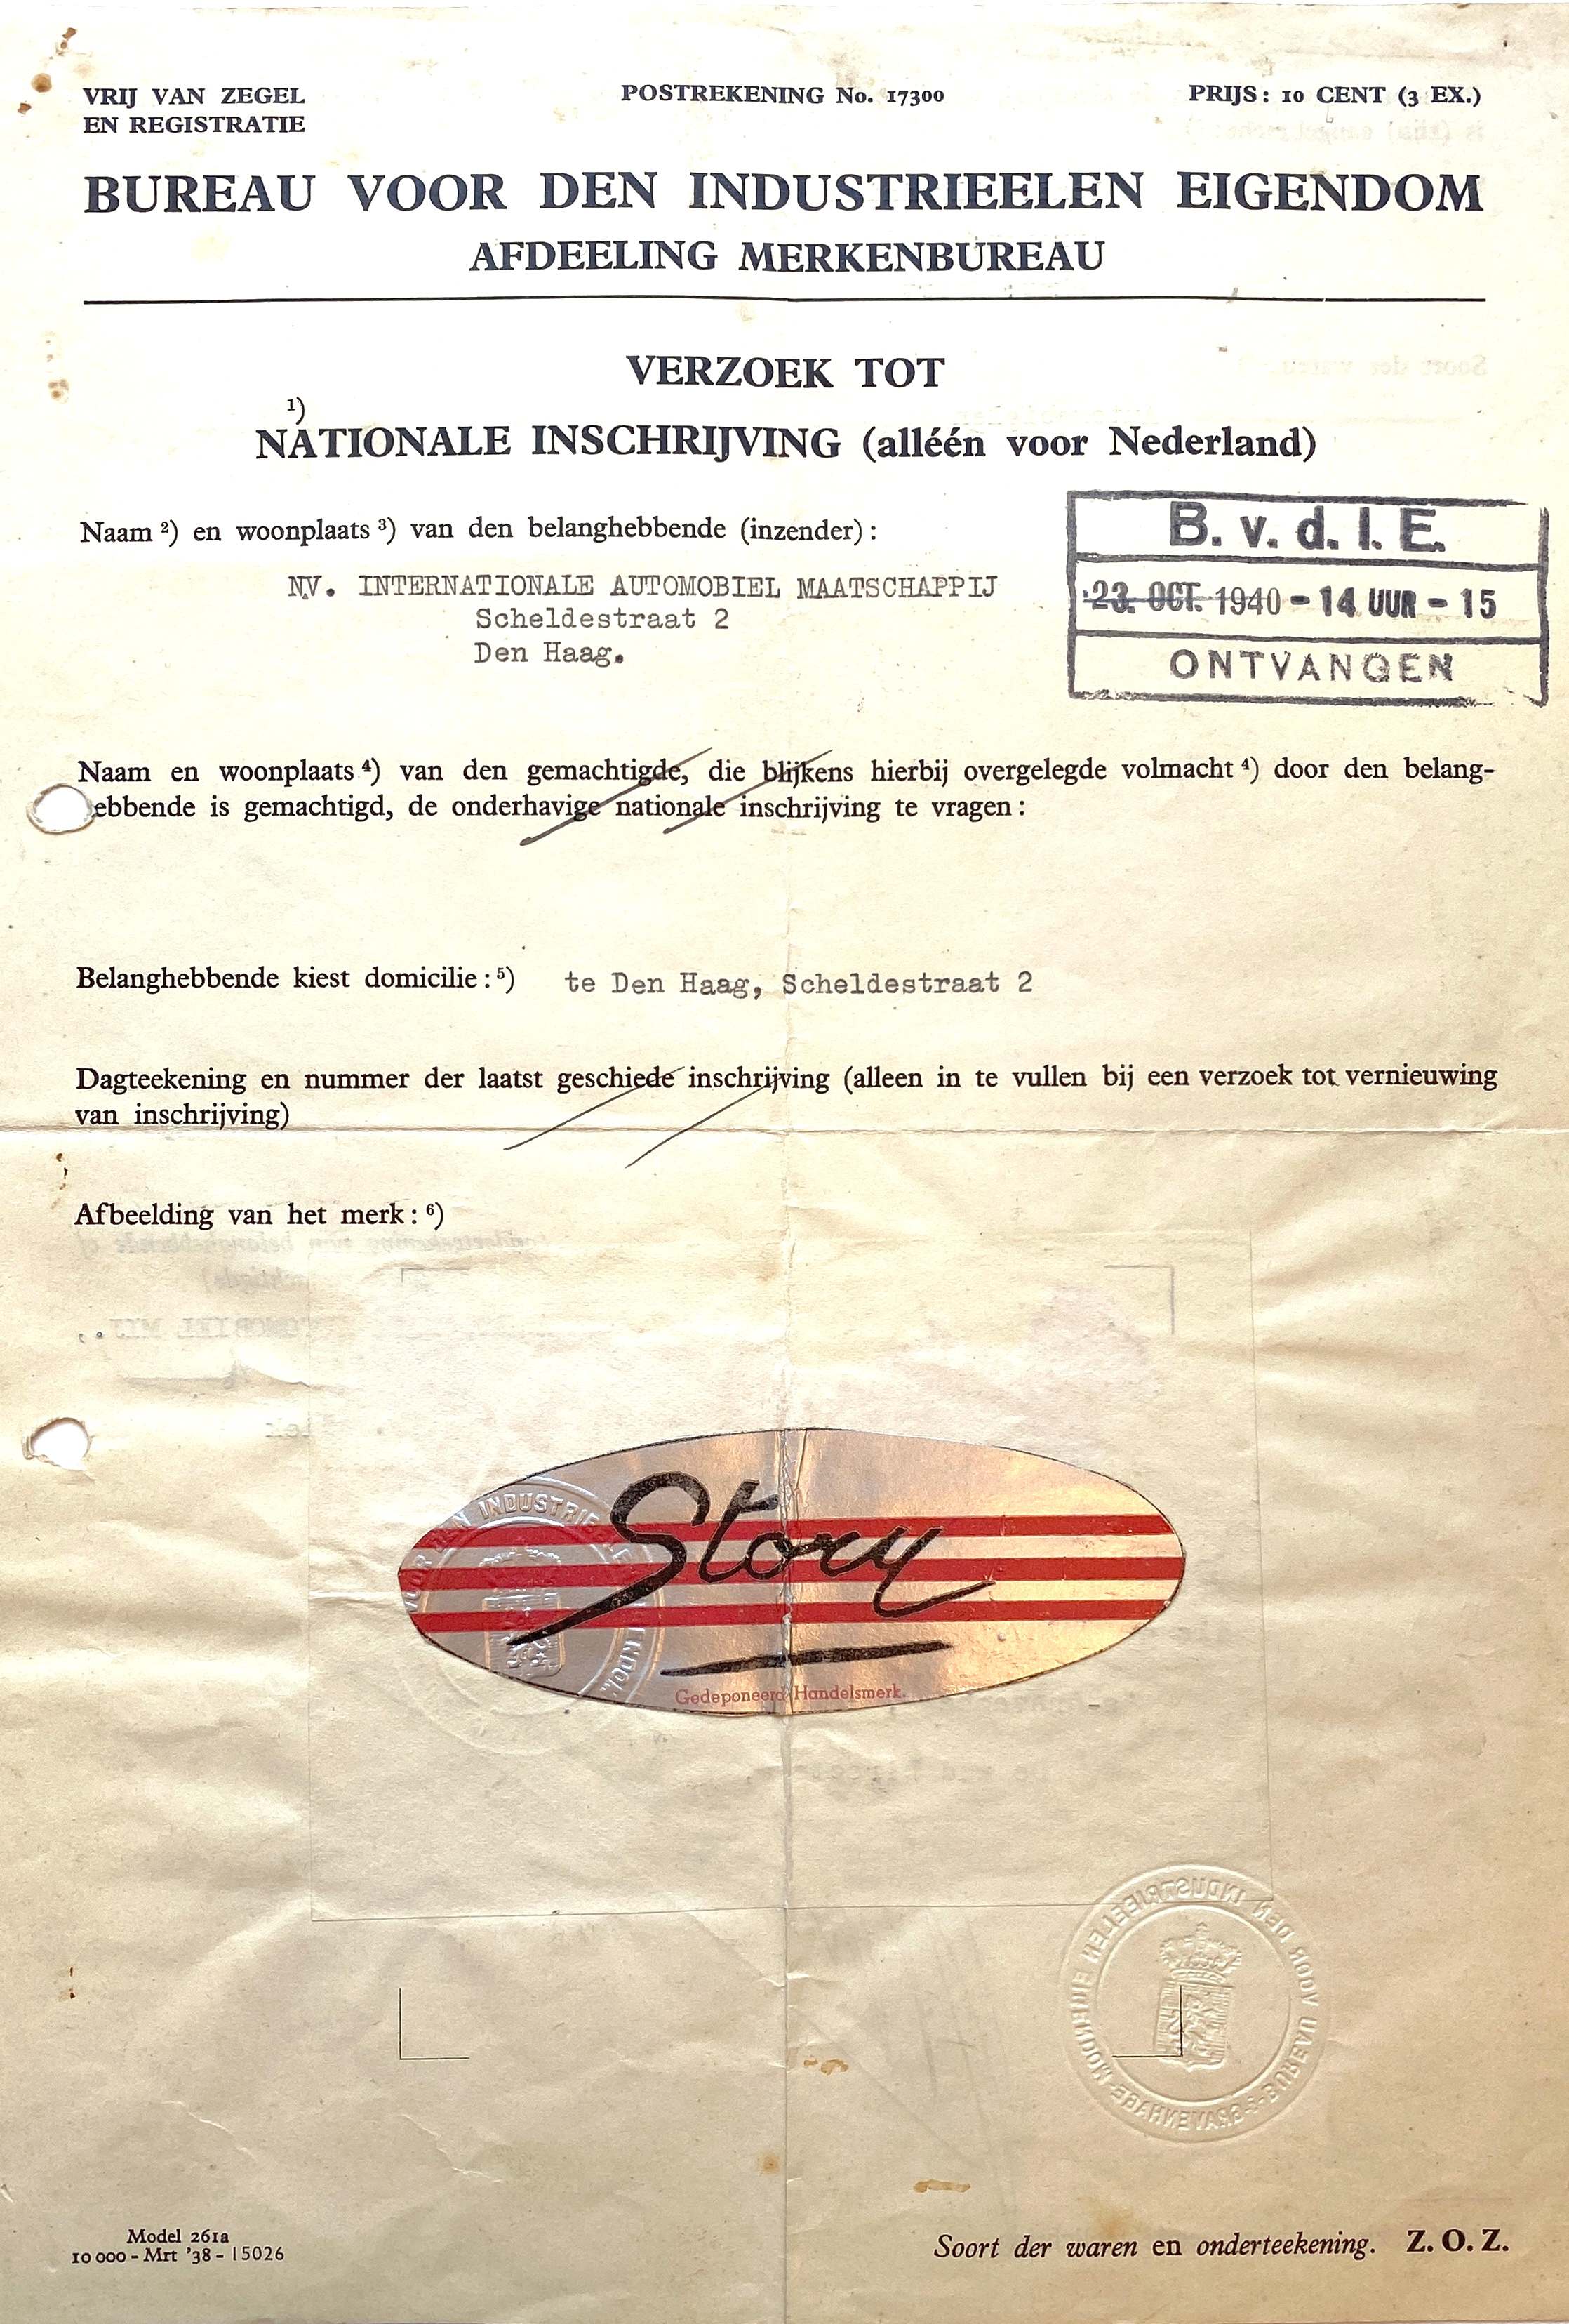 Verzoek tot inschrijving bij Bureau voor den Industrieelen Eigendom 15 juni 1940